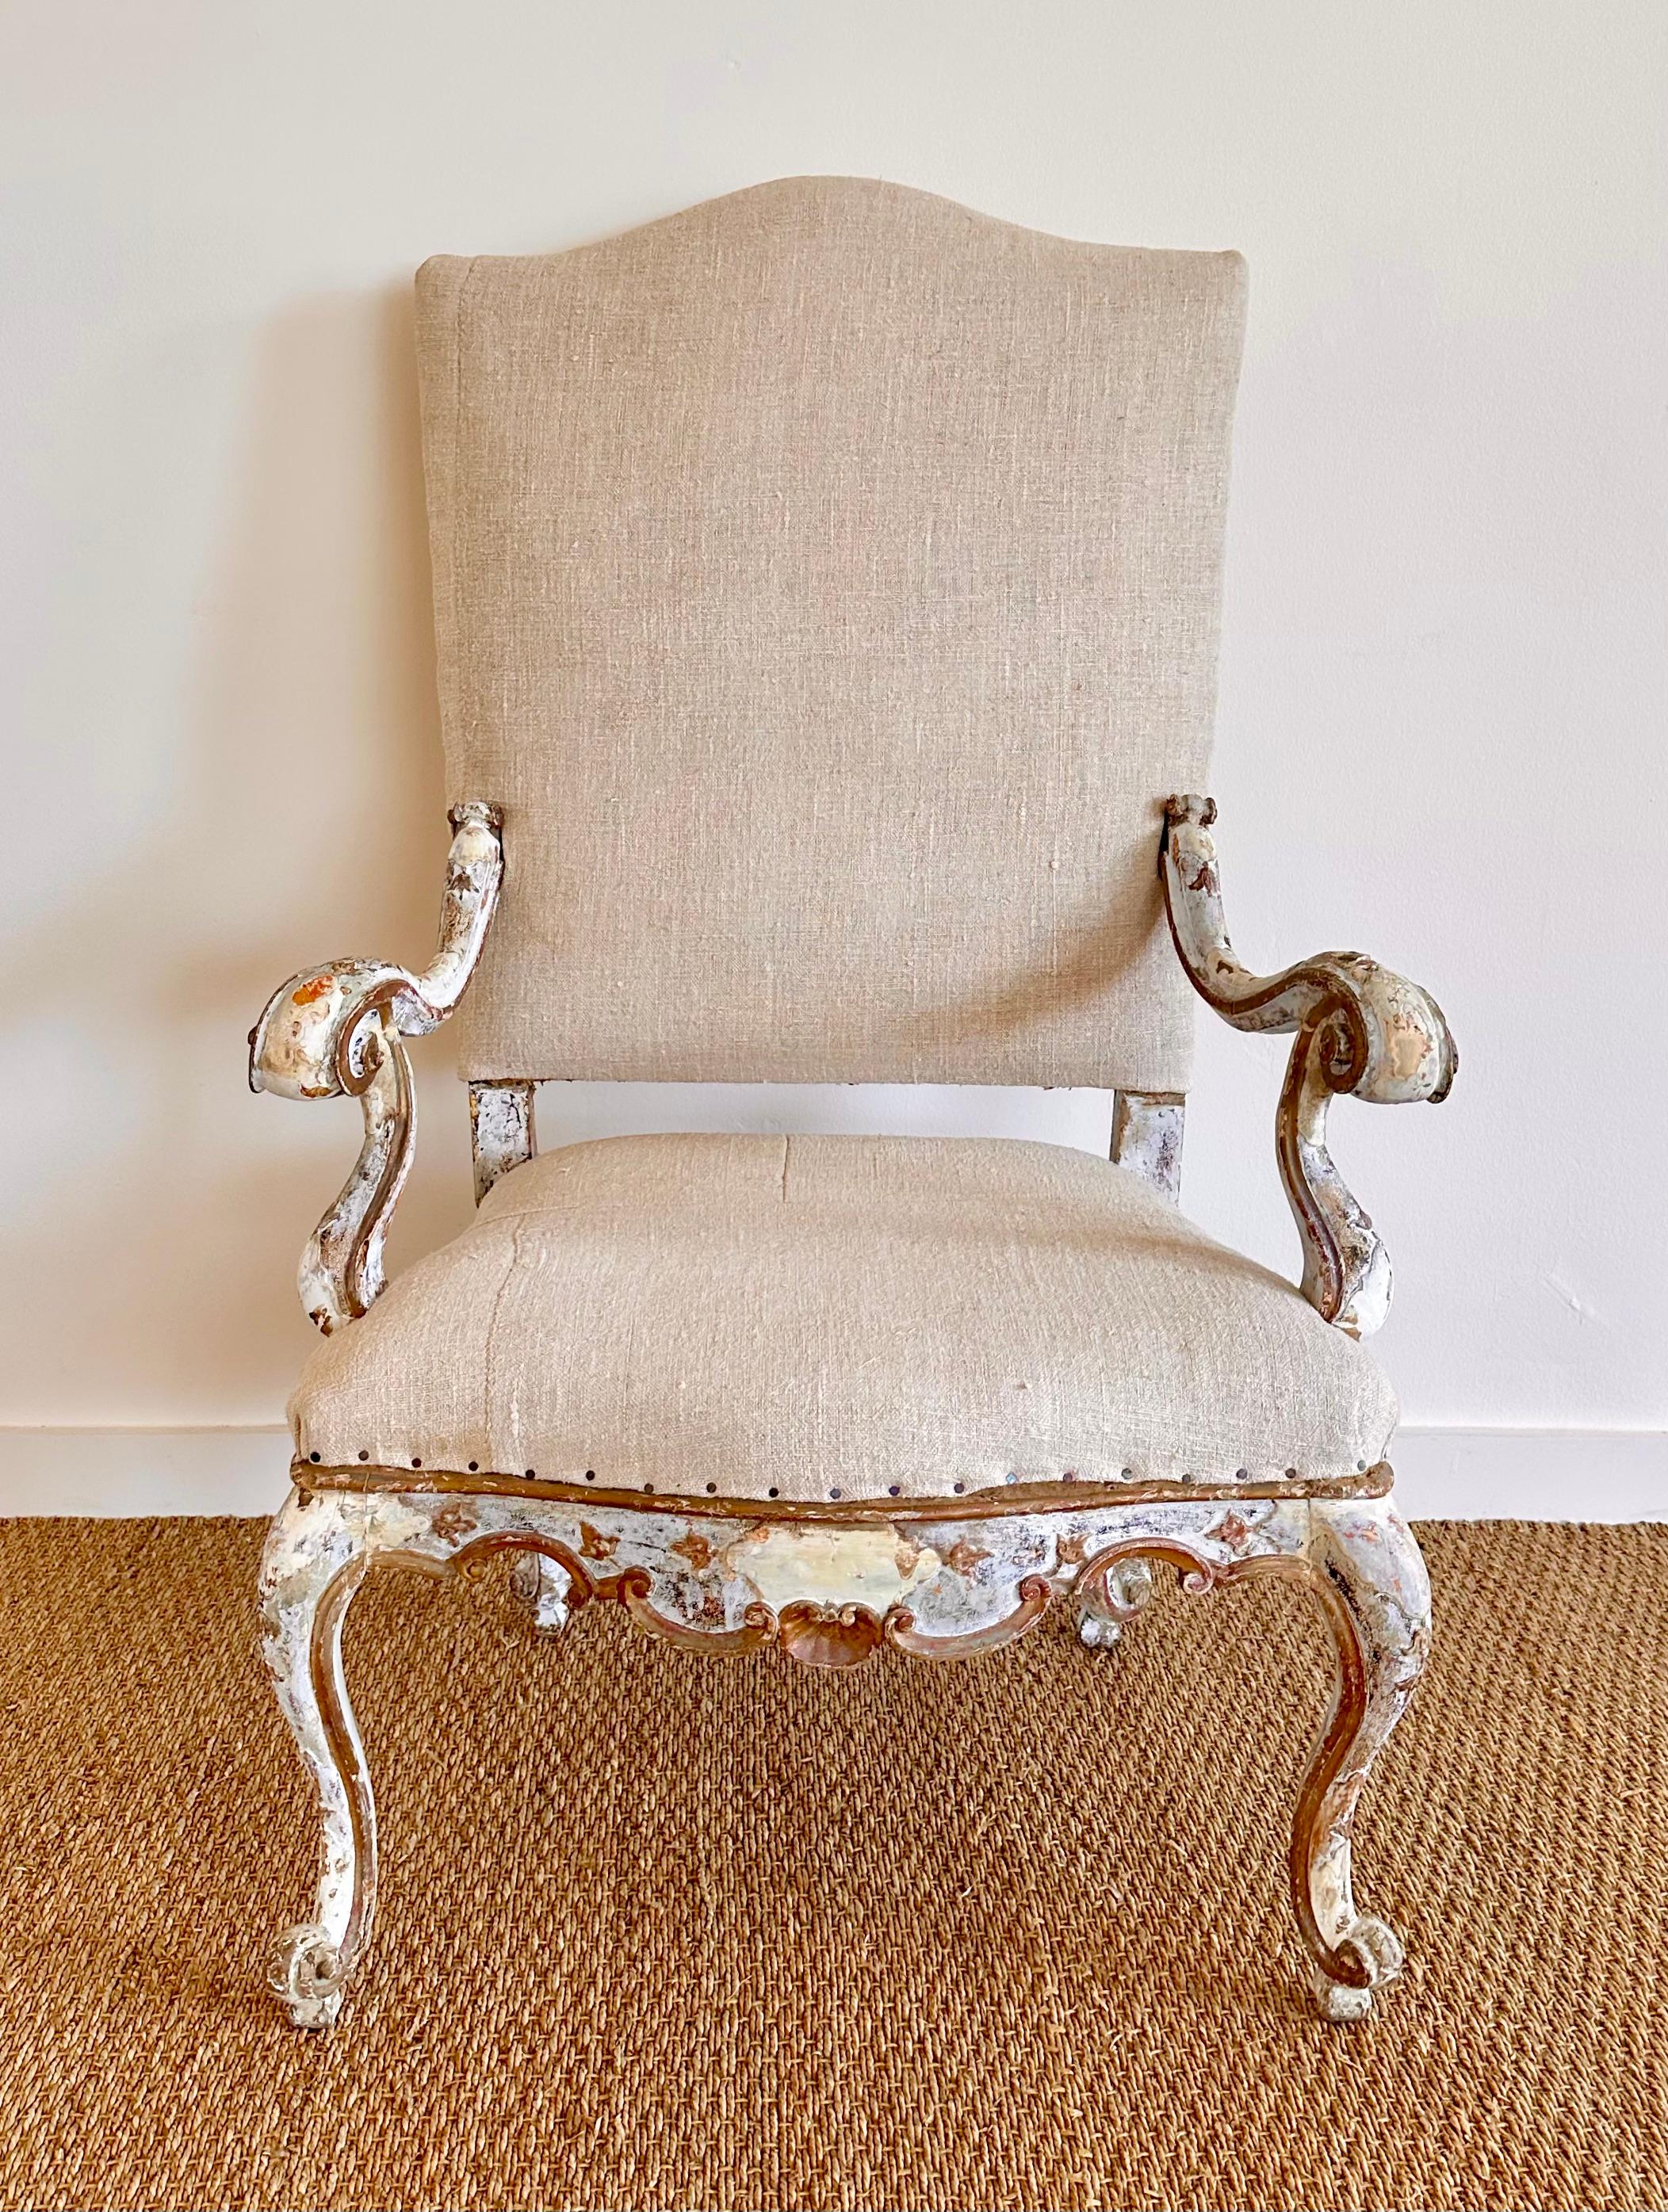 Grand fauteuil italien du XVIIIe siècle, peint en blanc et en bleu-gris pâle, avec des détails dorés.  Finition originale.  
Extrêmement charmant et très décoratif ainsi que confortable.  récemment revêtu d'un lourd tissu de lin belge.  